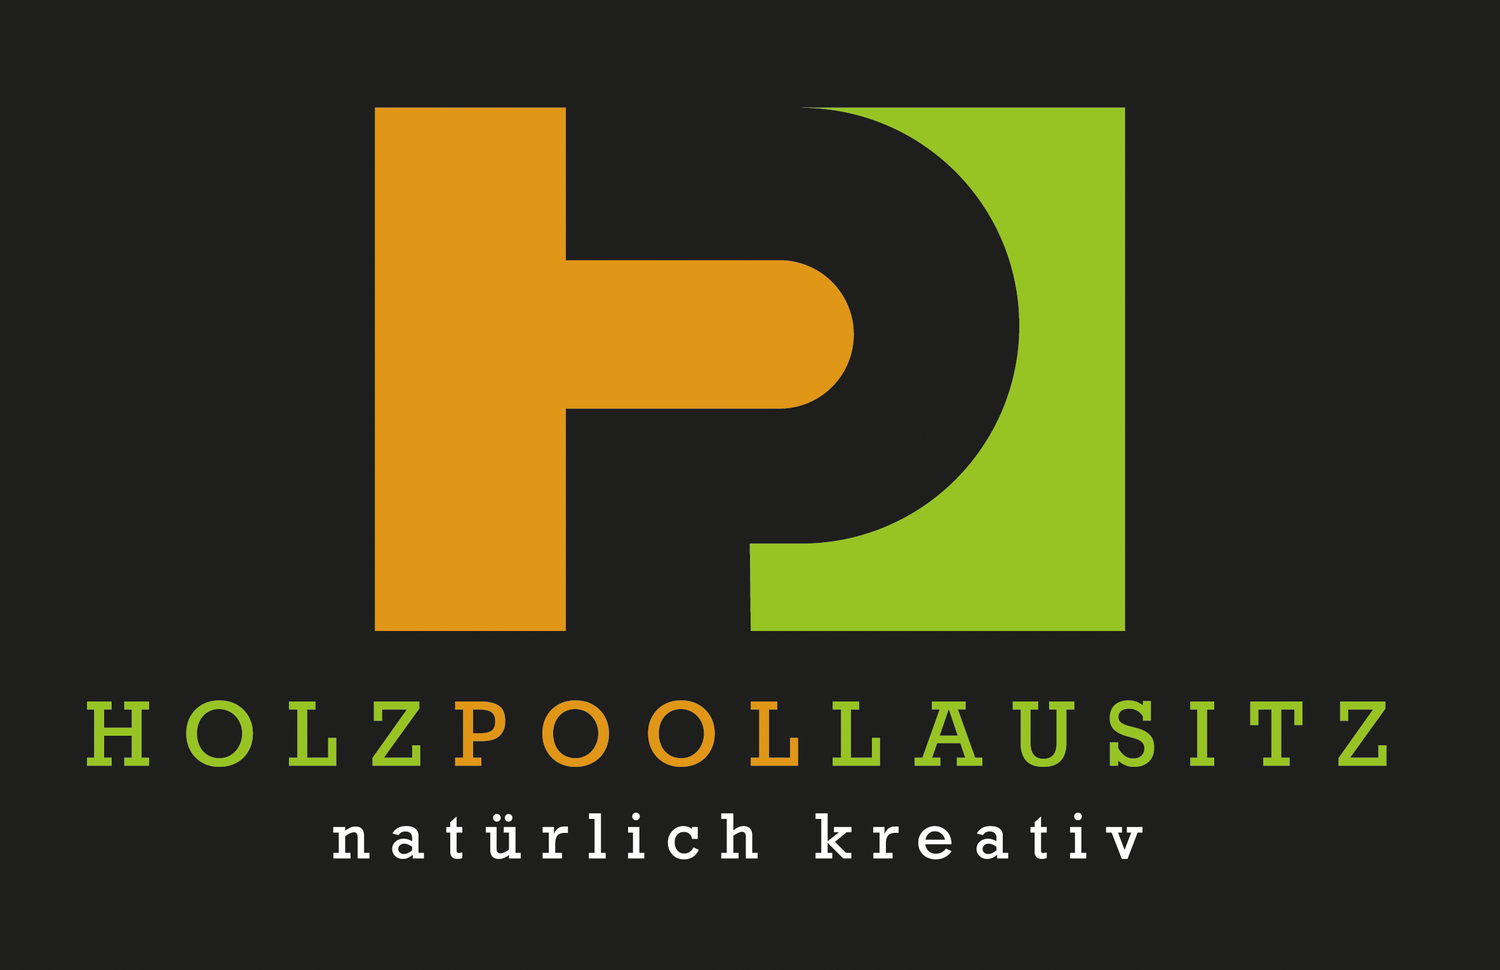 HolzPoolLausitz